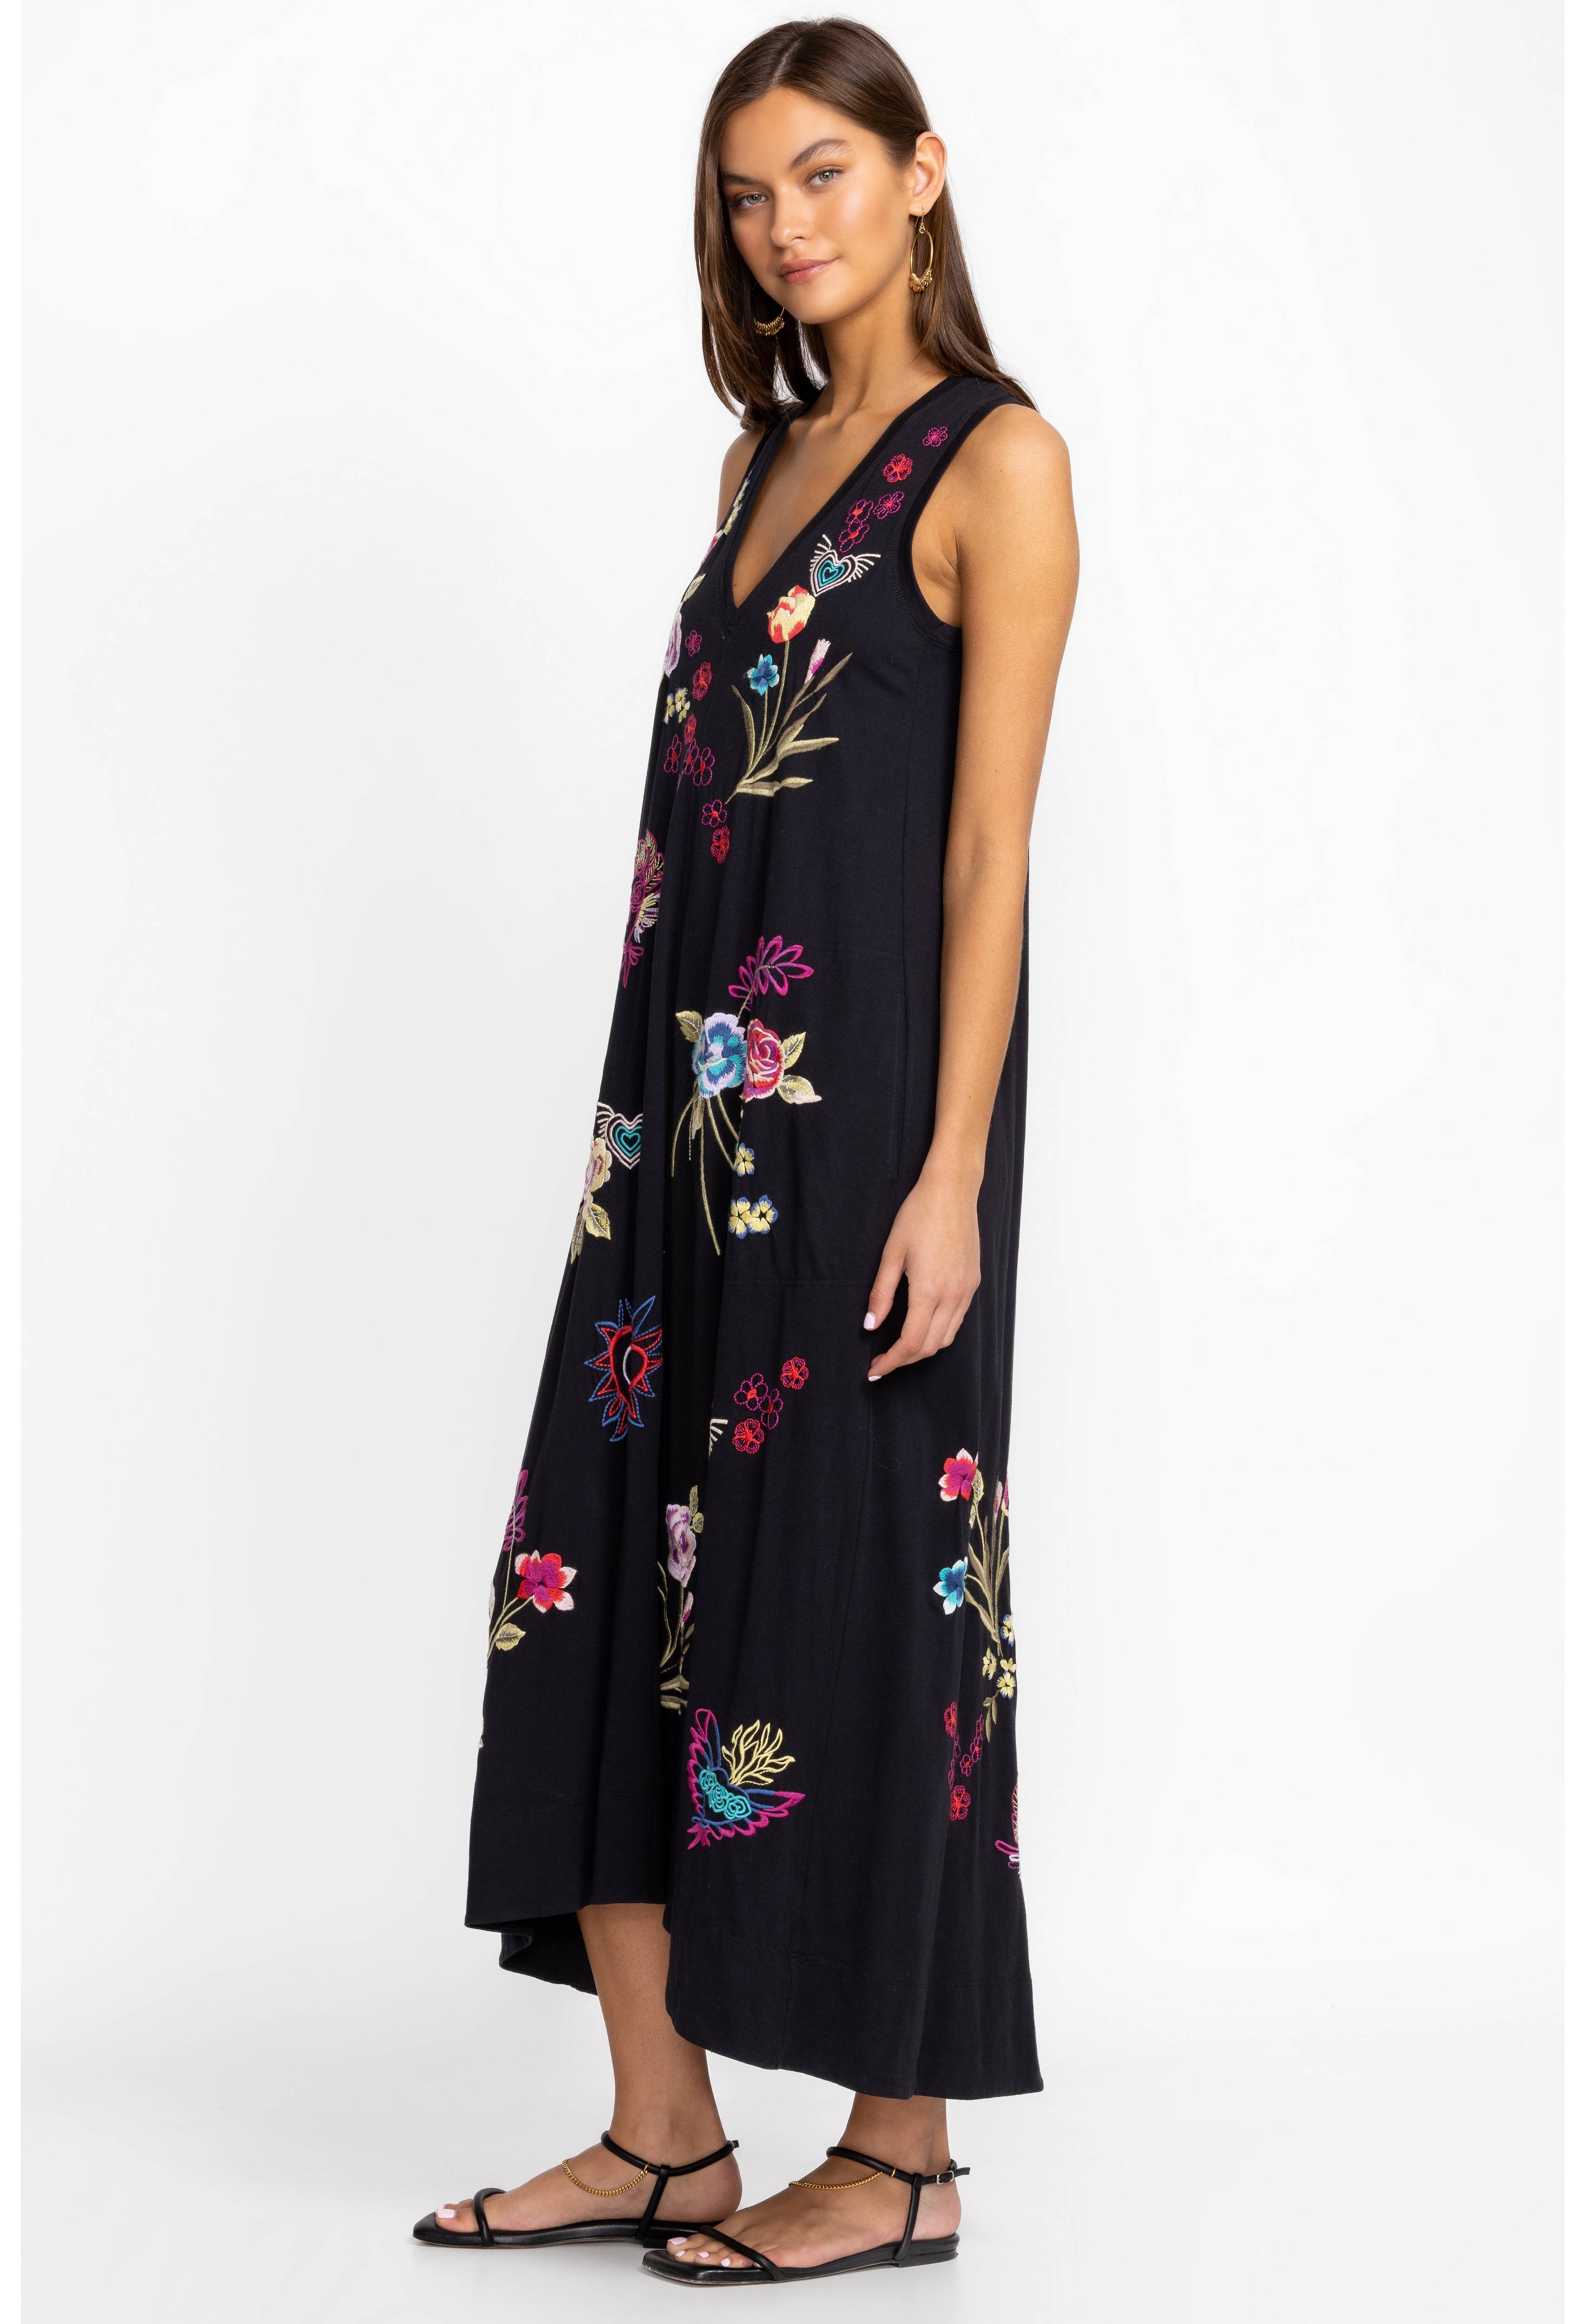 Jessi Knit V-Neck Maxi Dress, , large image number 2